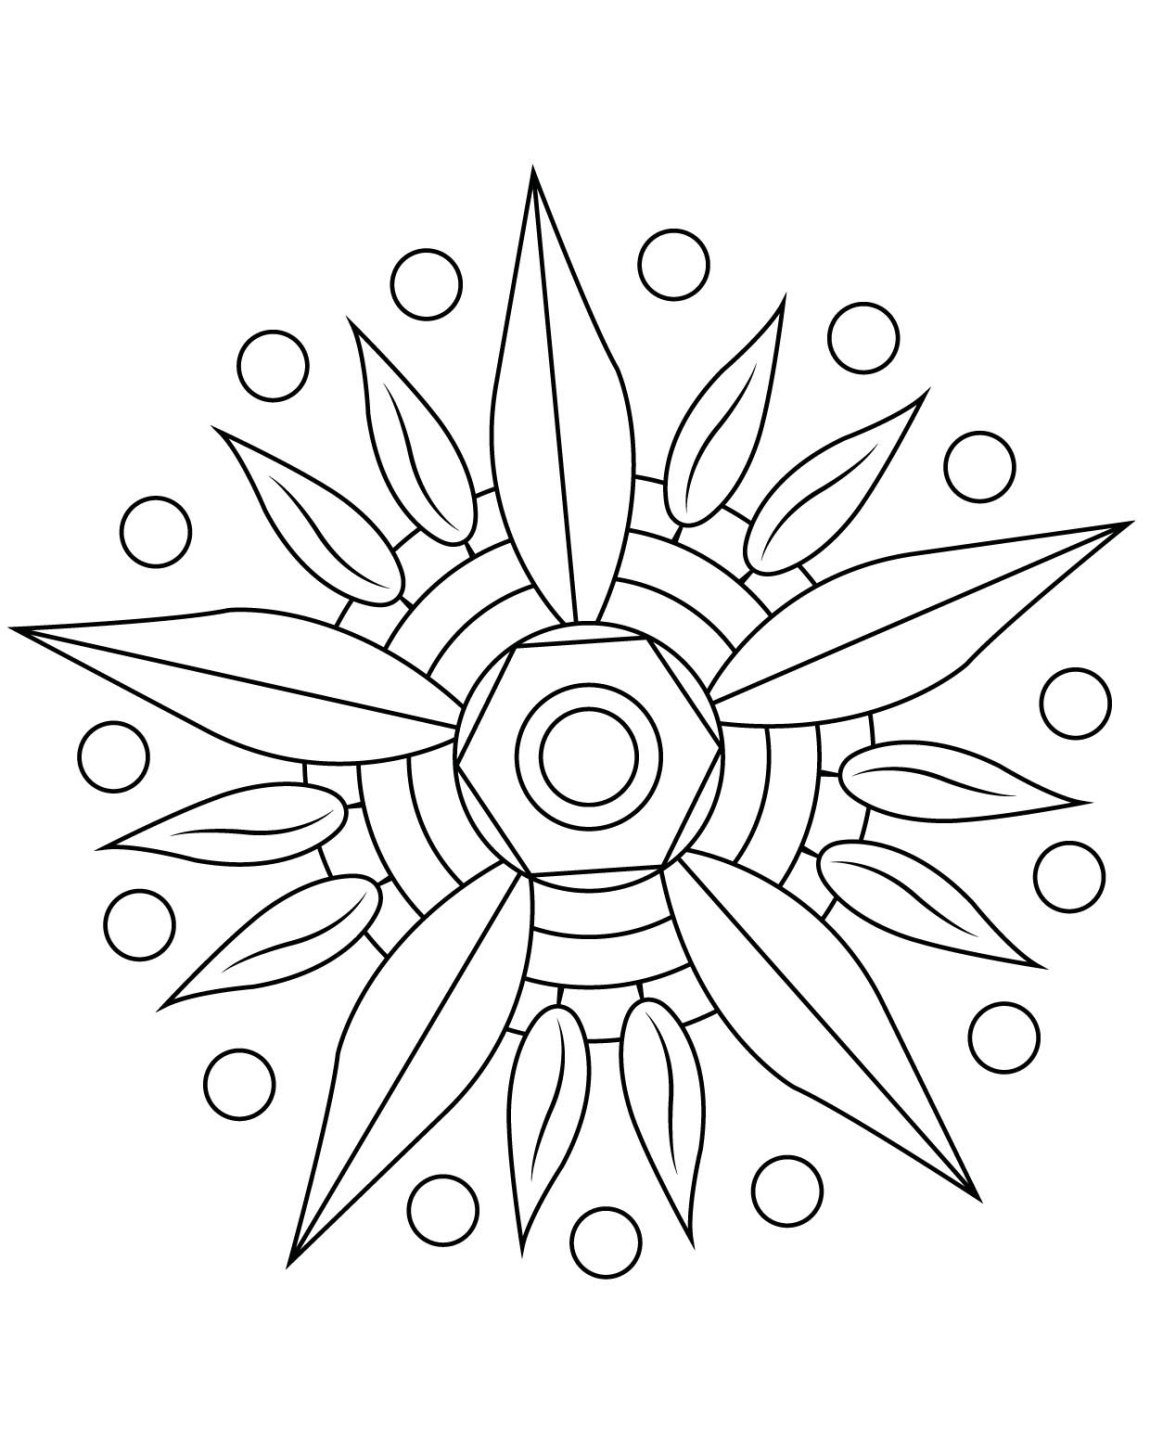 Dibujo para colorear: Mandalas para niños (Mandalas) #124155 - Dibujos para Colorear e Imprimir Gratis